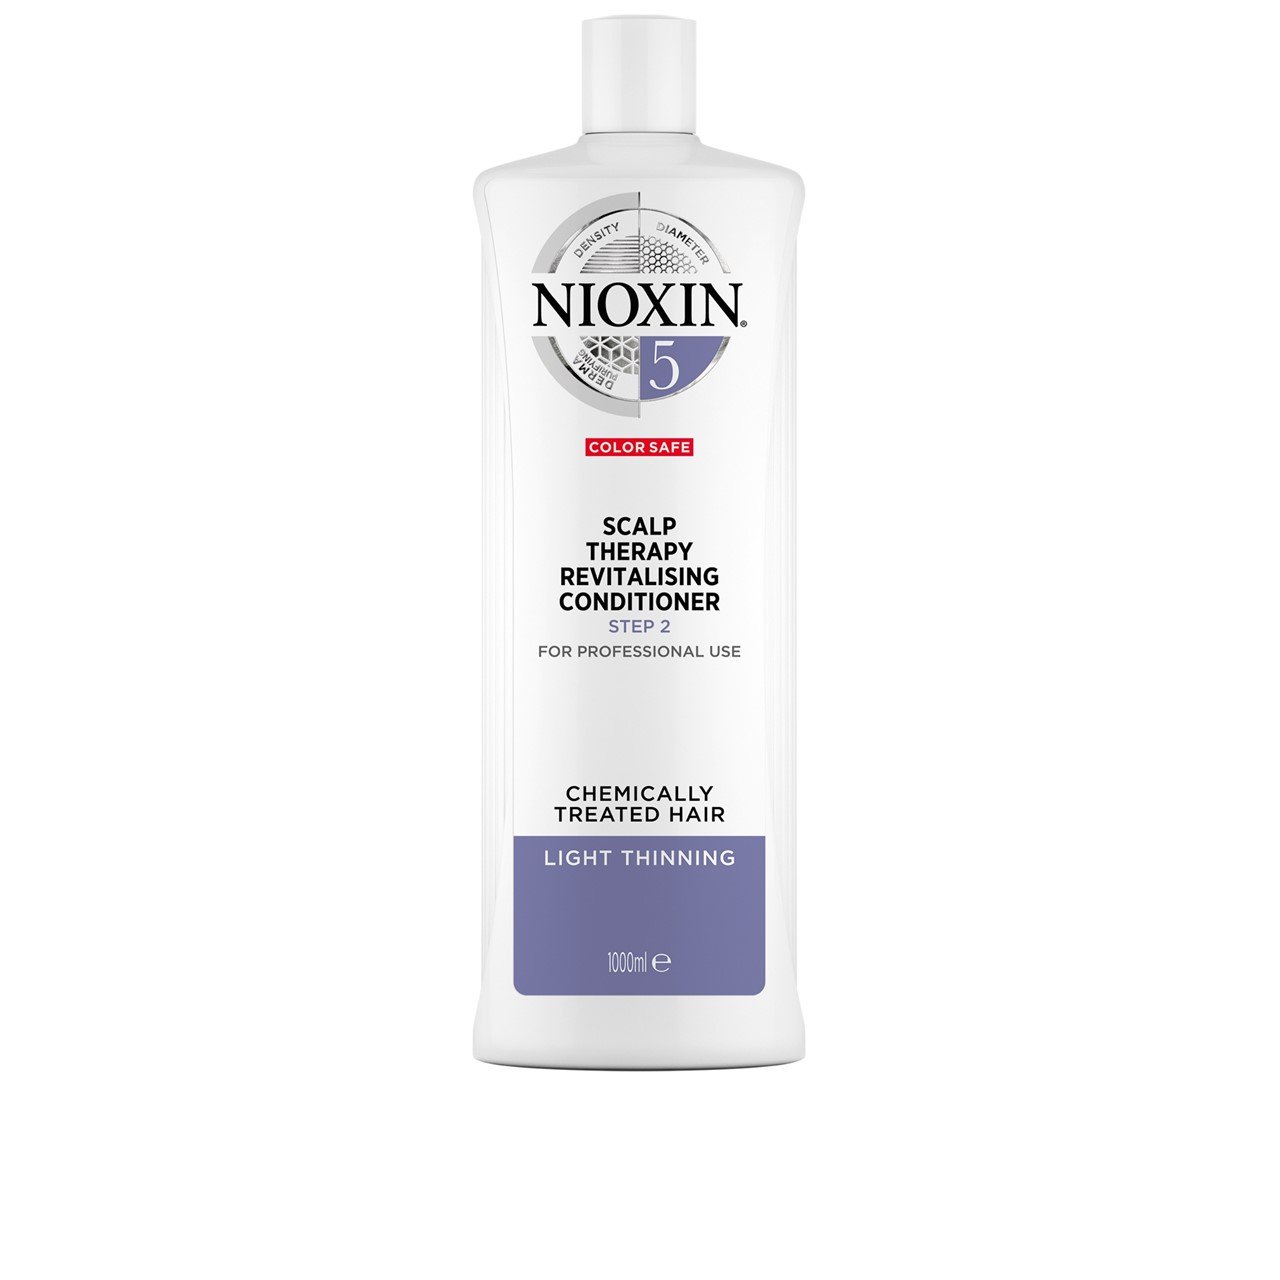 Nioxin System 5 Scalp Therapy Conditioner 1L (33.81fl oz)